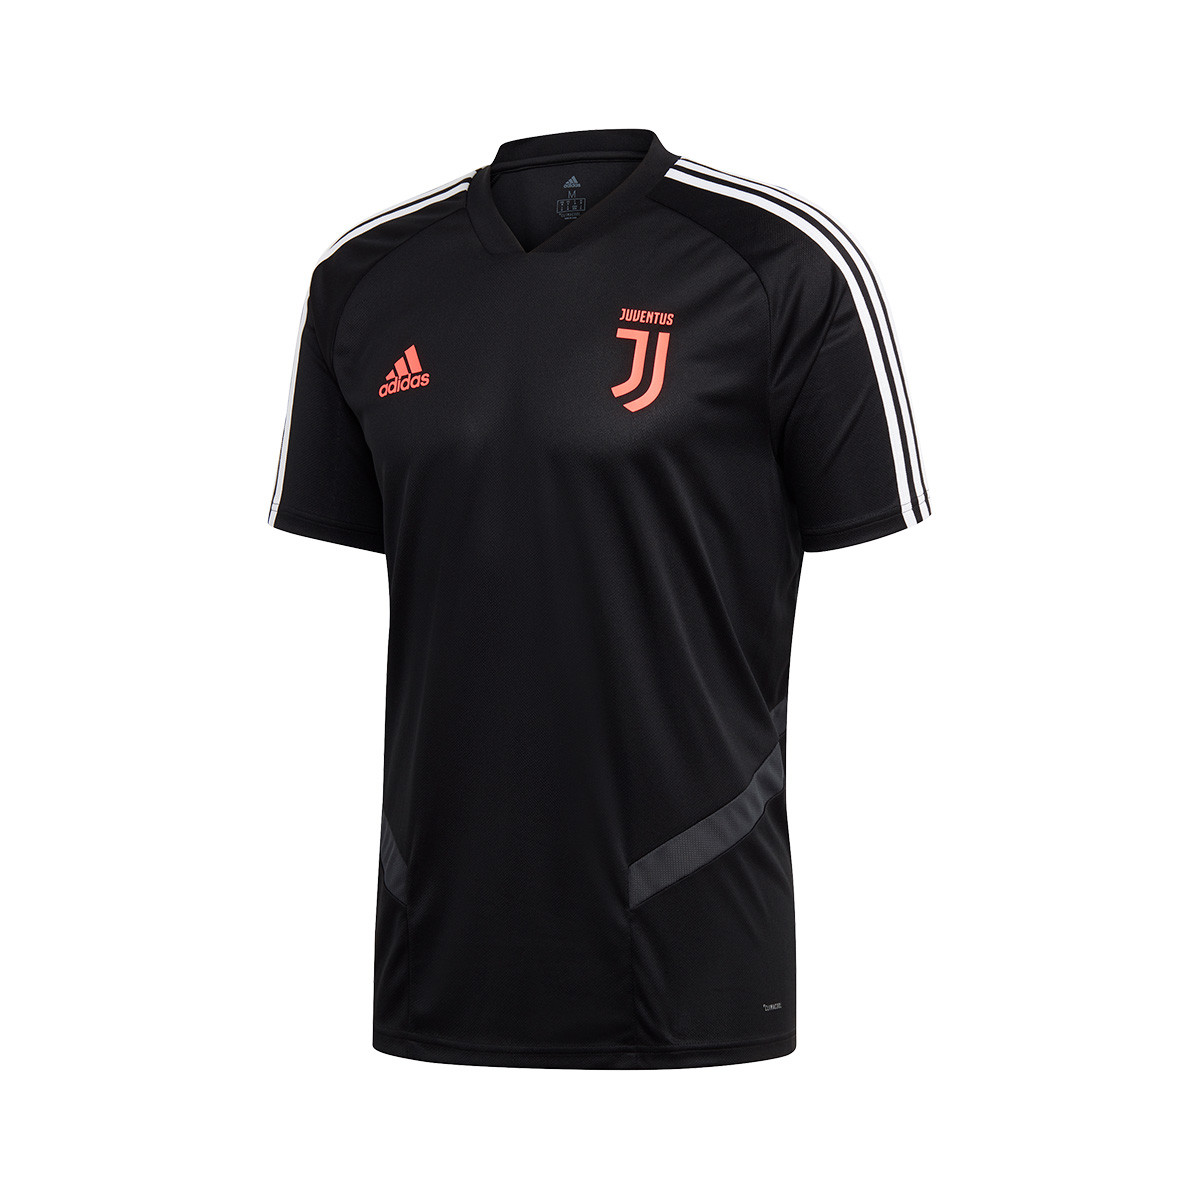 Jersey adidas Juventus Training 2019 